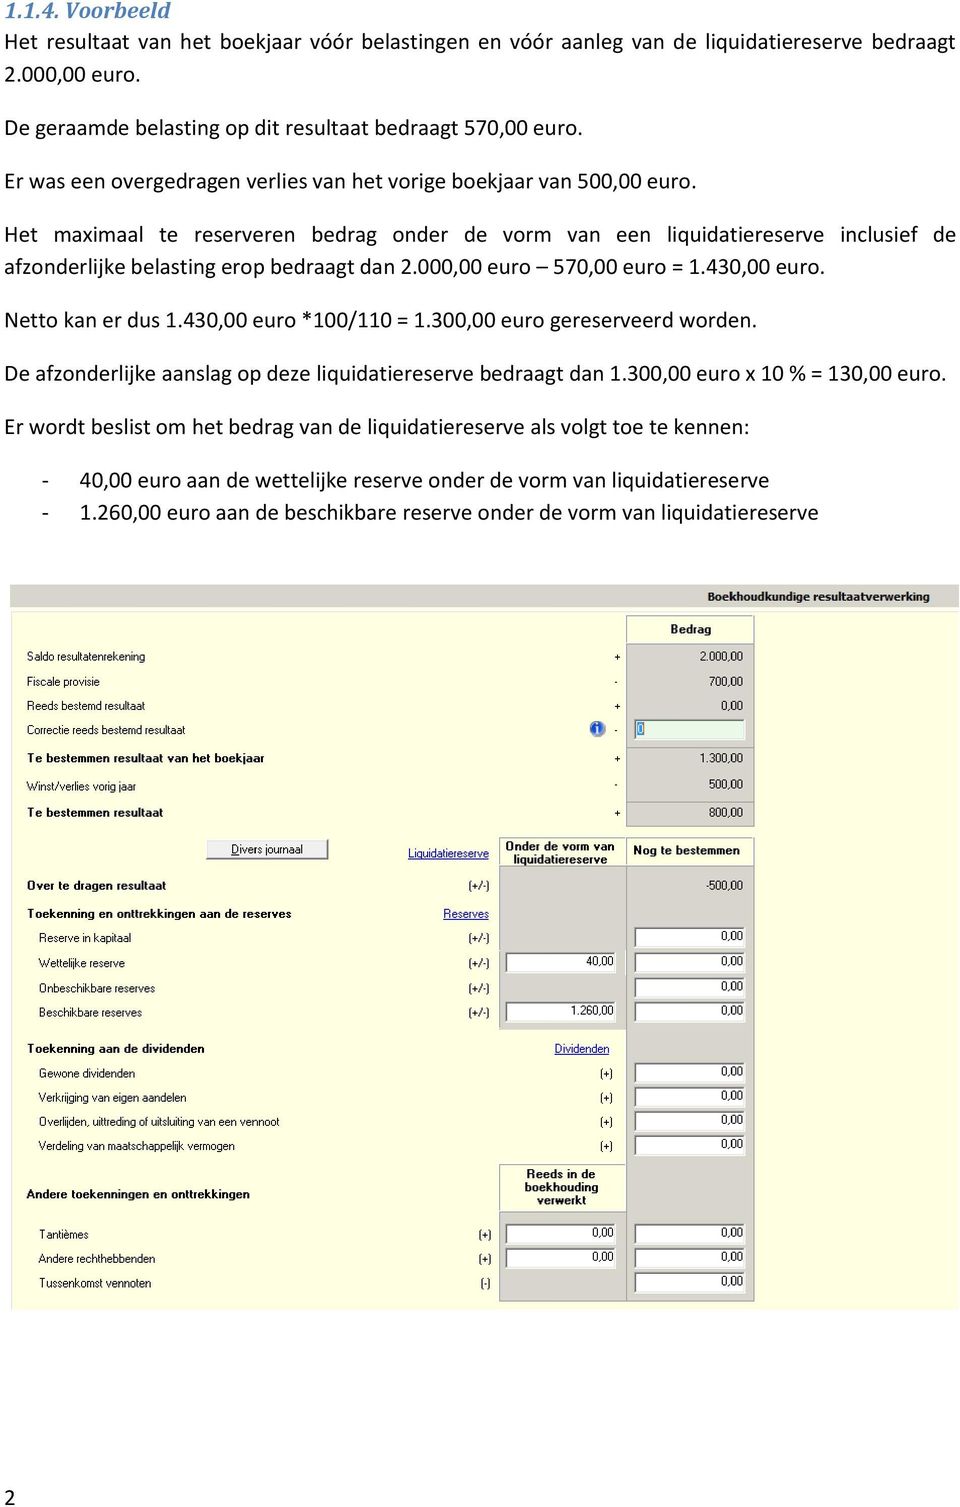 Het maximaal te reserveren bedrag onder de vorm van een liquidatiereserve inclusief de afzonderlijke belasting erop bedraagt dan 2.000,00 euro 570,00 euro = 1.430,00 euro. Netto kan er dus 1.